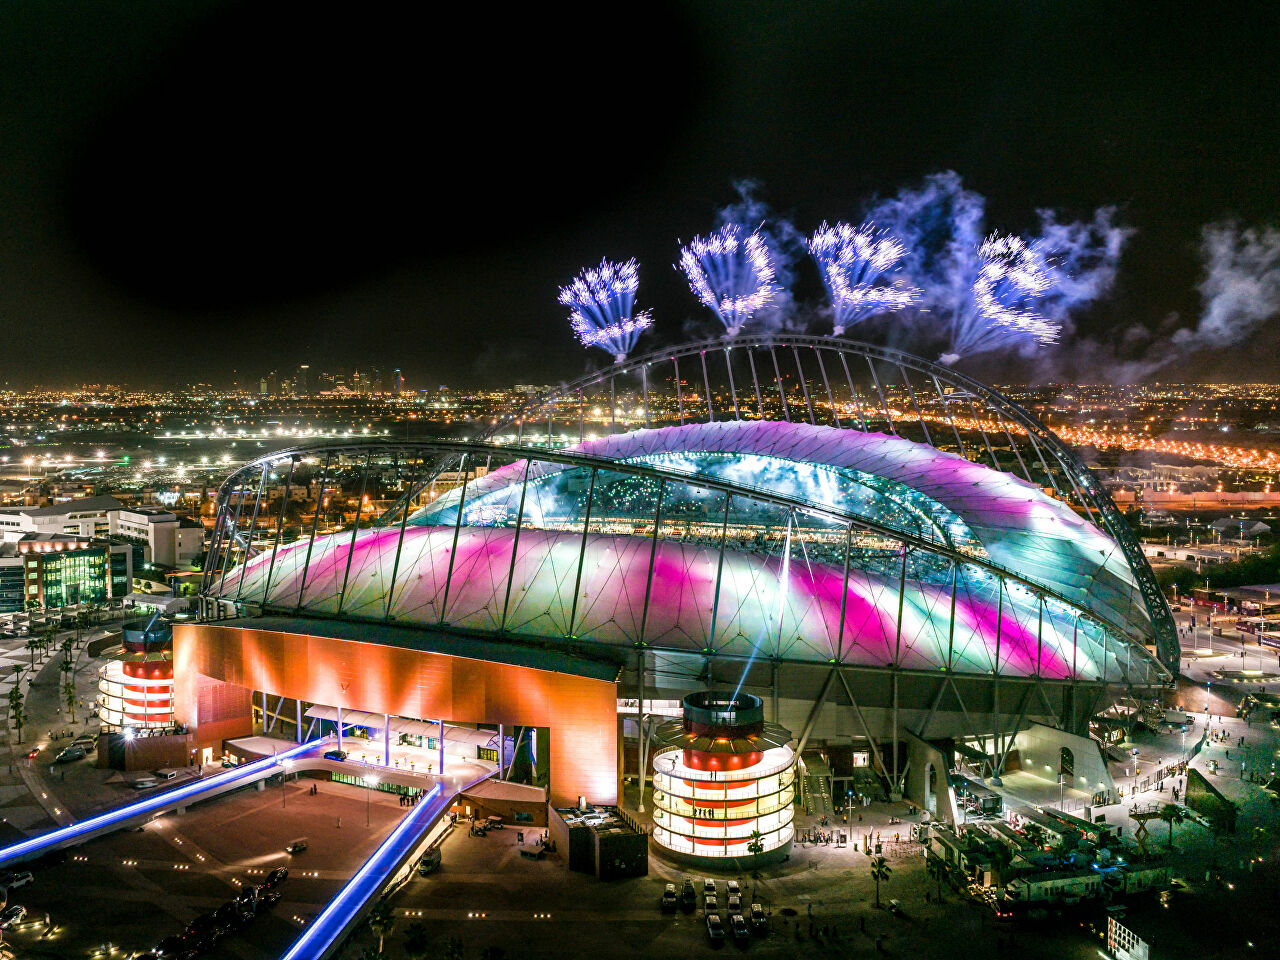 قطر تكشف عن منصة لتنظيم حضور كأس العالم